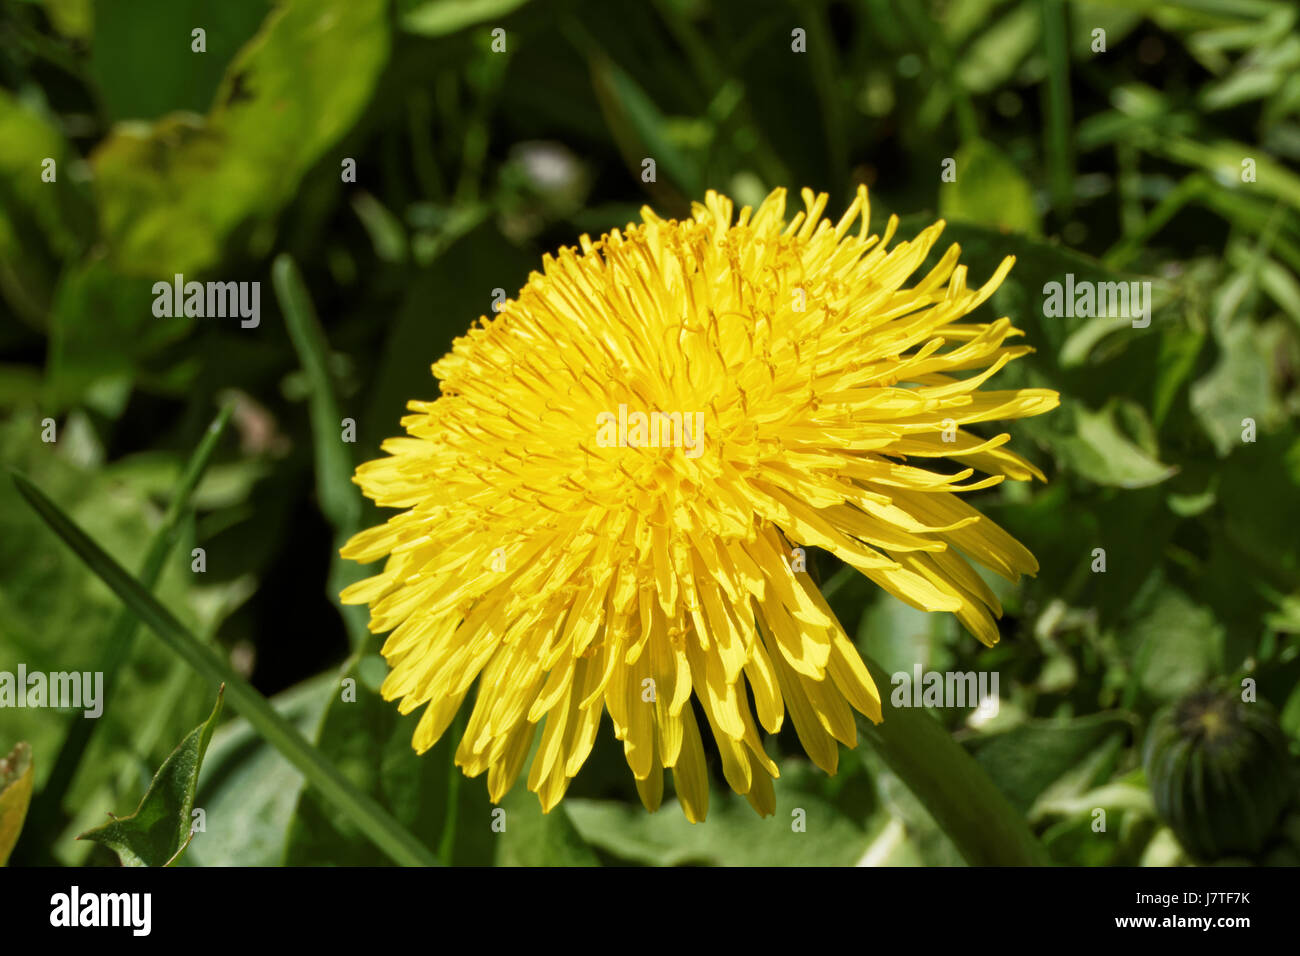 Foto von einer blühenden Löwenzahn, die Gattung der mehrjährige krautige Pflanzen der Familie der Astropeus oder der Complexaceae (Asteraceae) Stockfoto